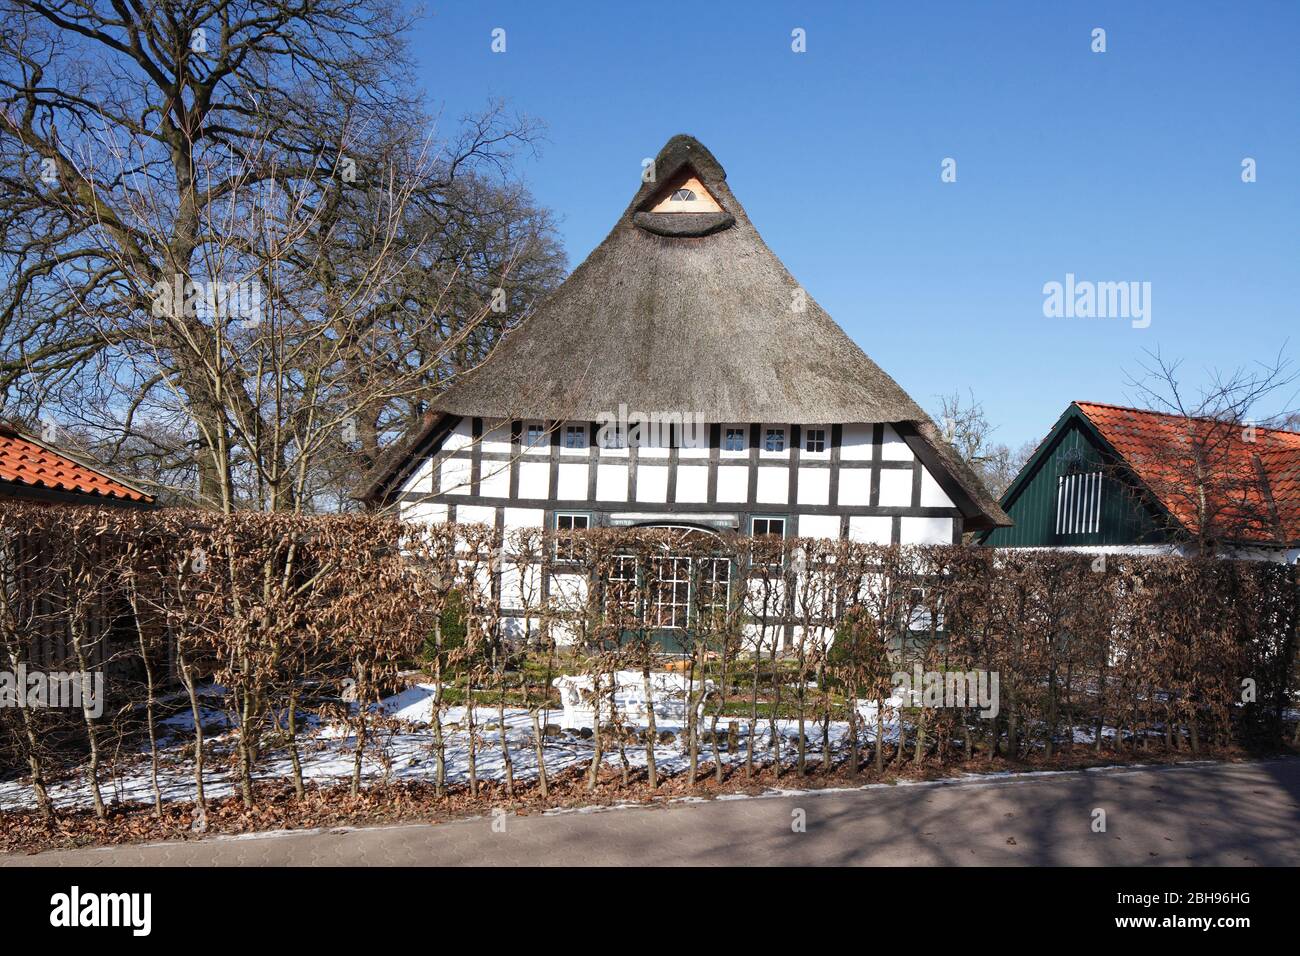 Maison à colombages, ancienne ferme en hiver, Oberneuland, Bremen, Deutschland, Europa Banque D'Images